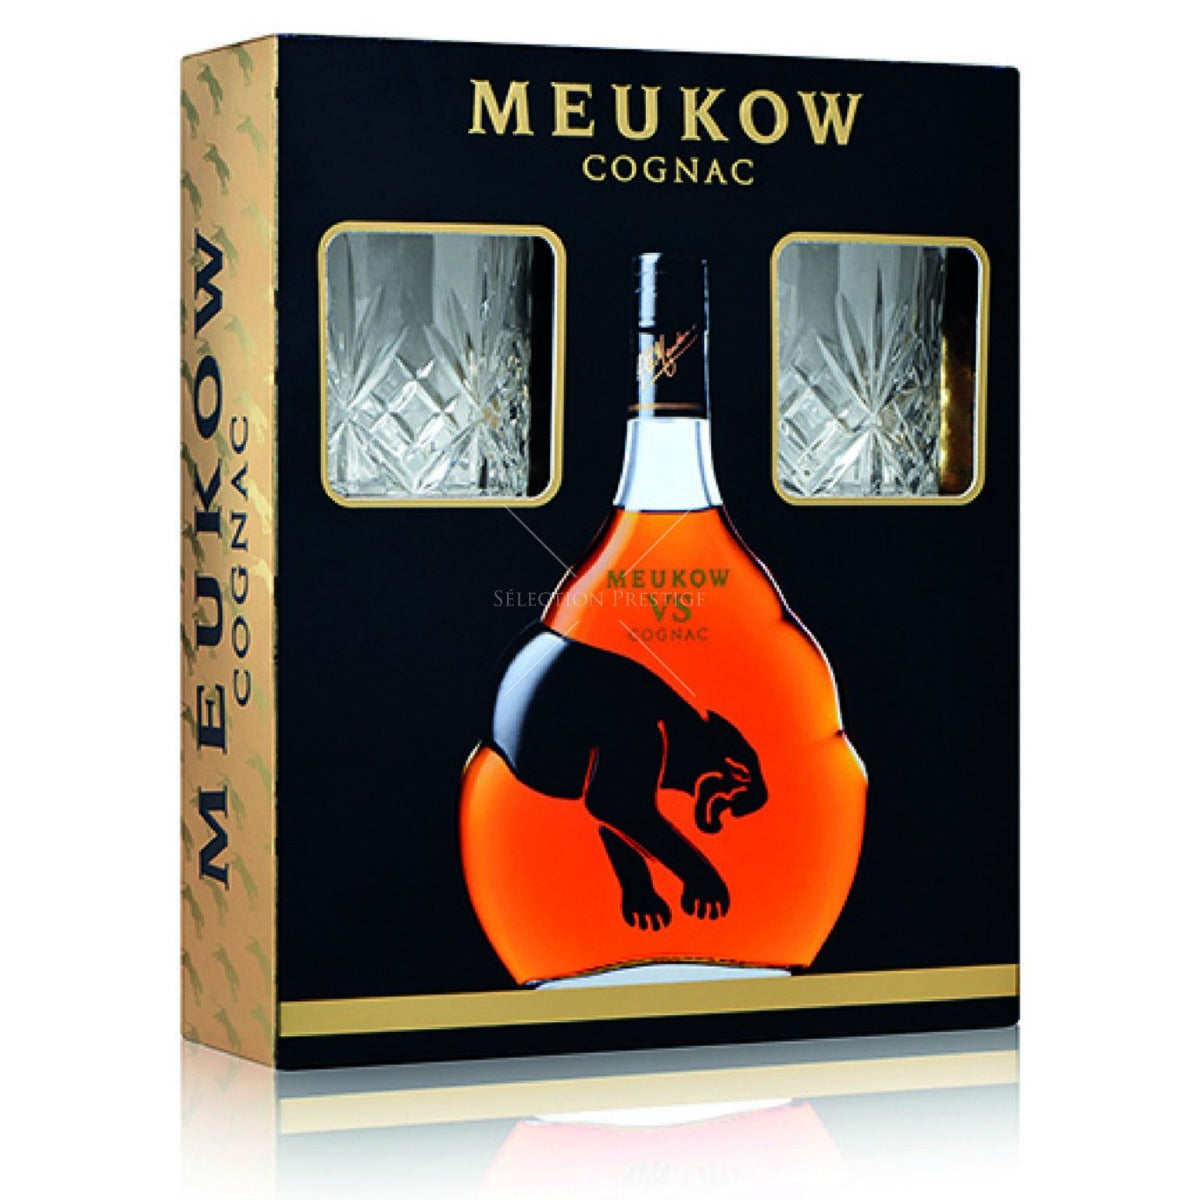 MEUKOW COGNAC VS FRANCE GIFT PACK W/ GLASSES 750ML